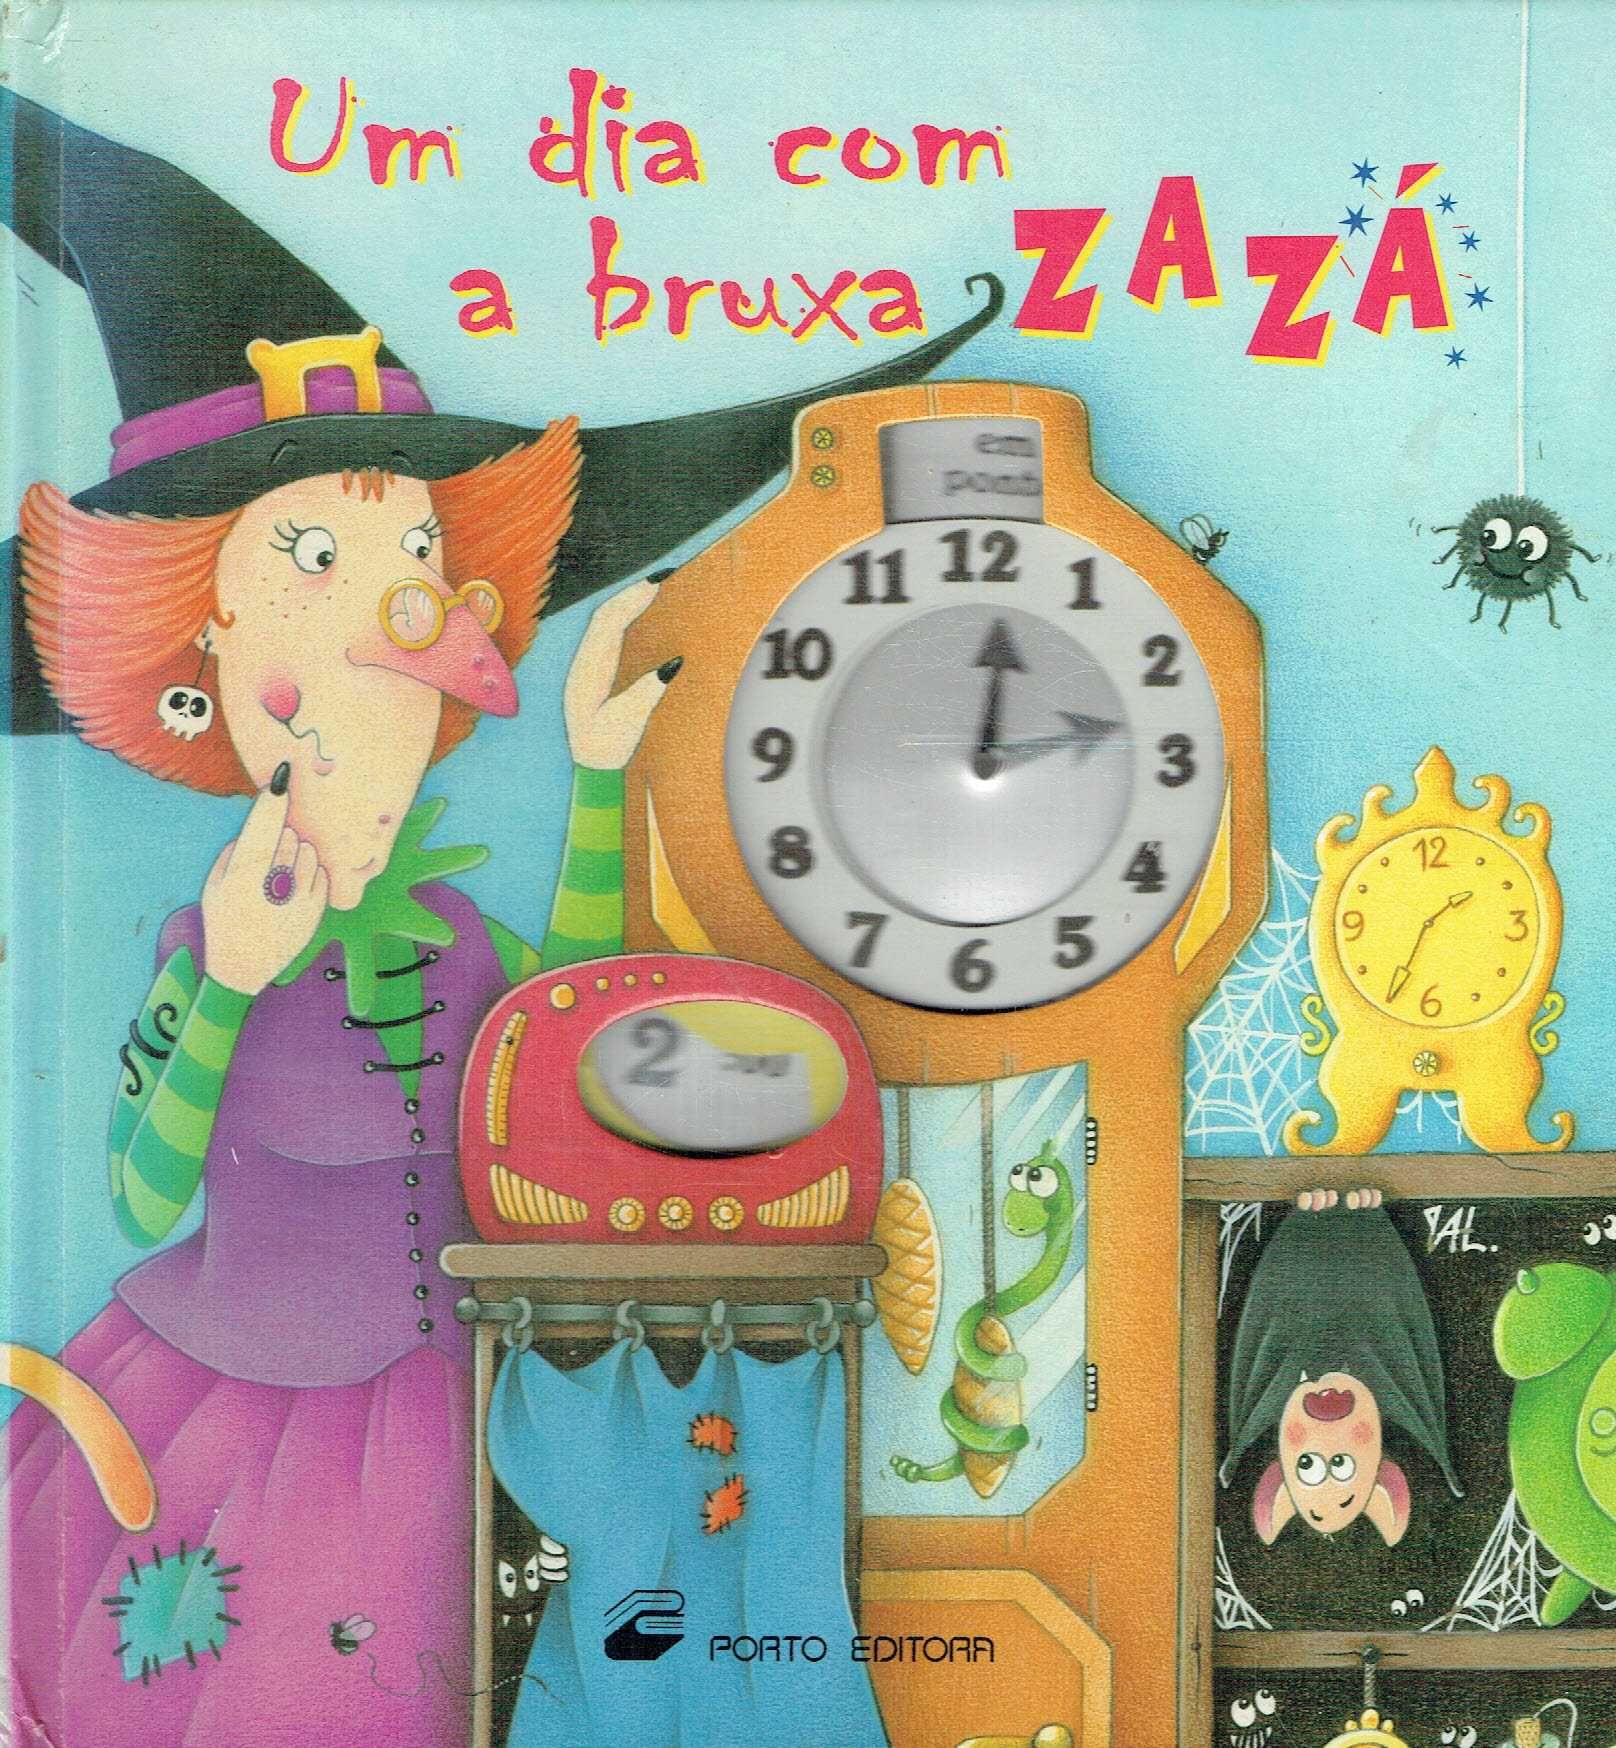 7909

Um dia com a Bruxa ZAZA (a partir dos 3 anos) 

Porto Editora